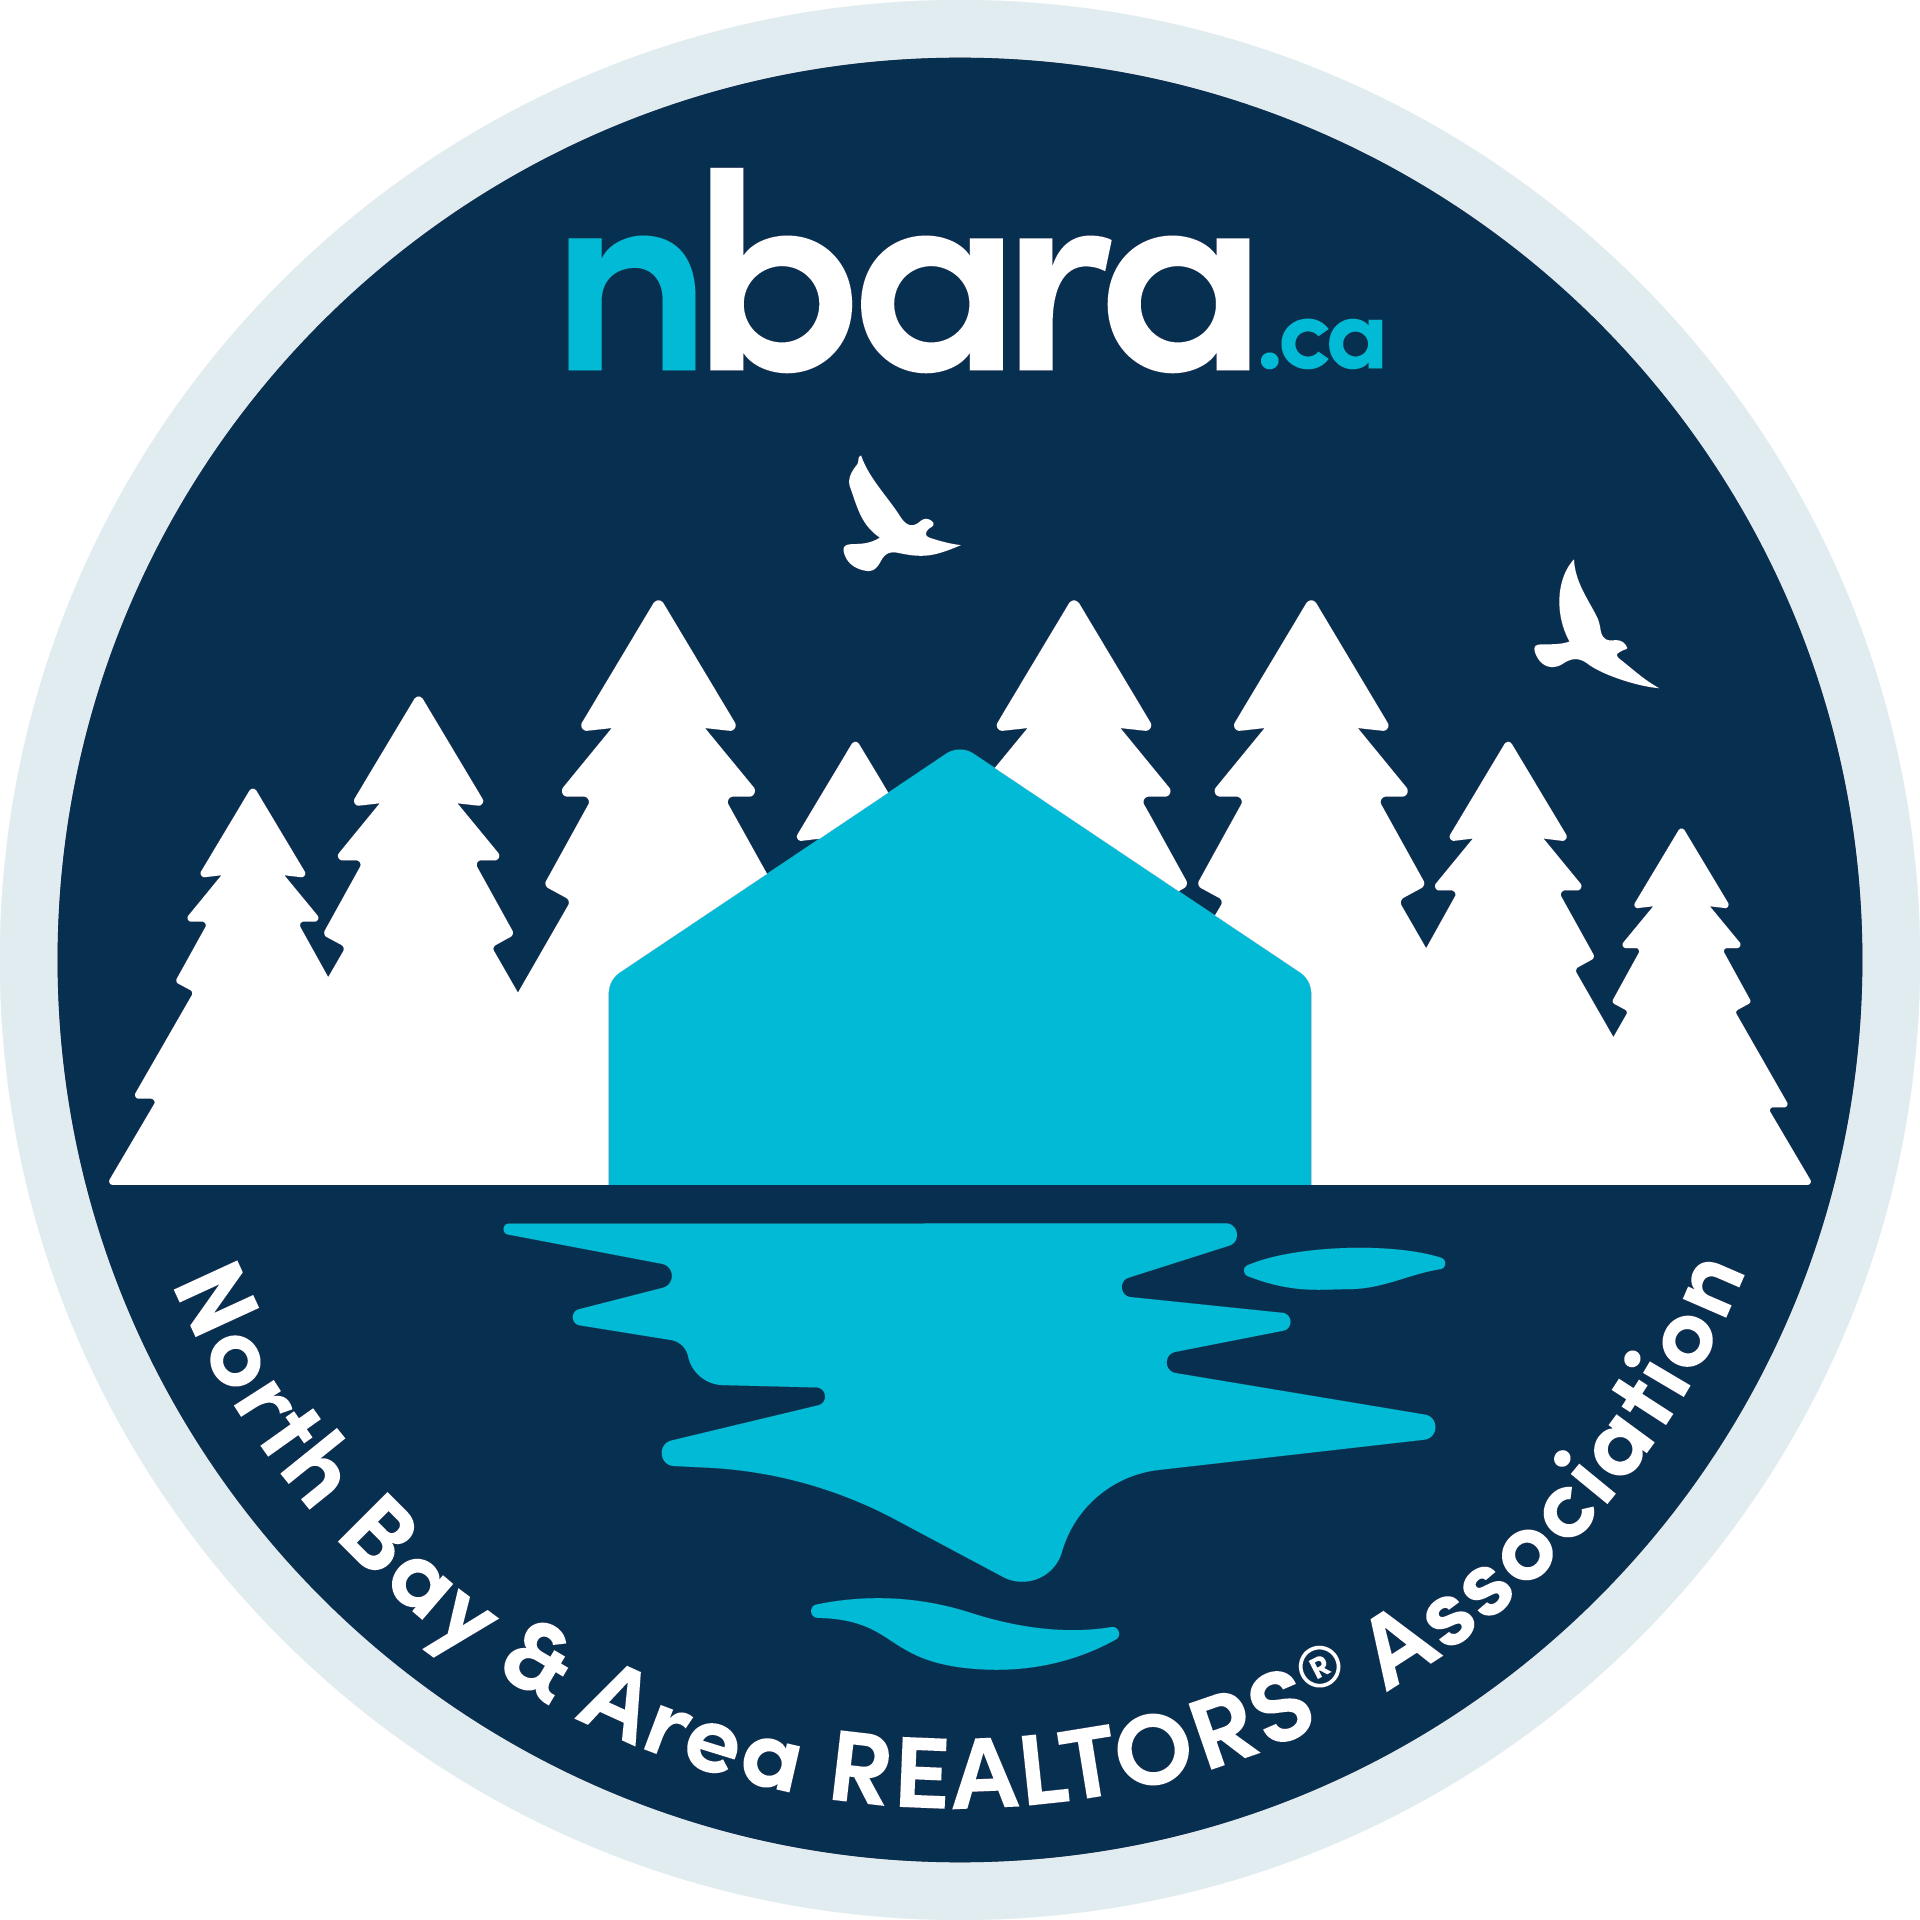 North Bay & Area REALTORS® Association